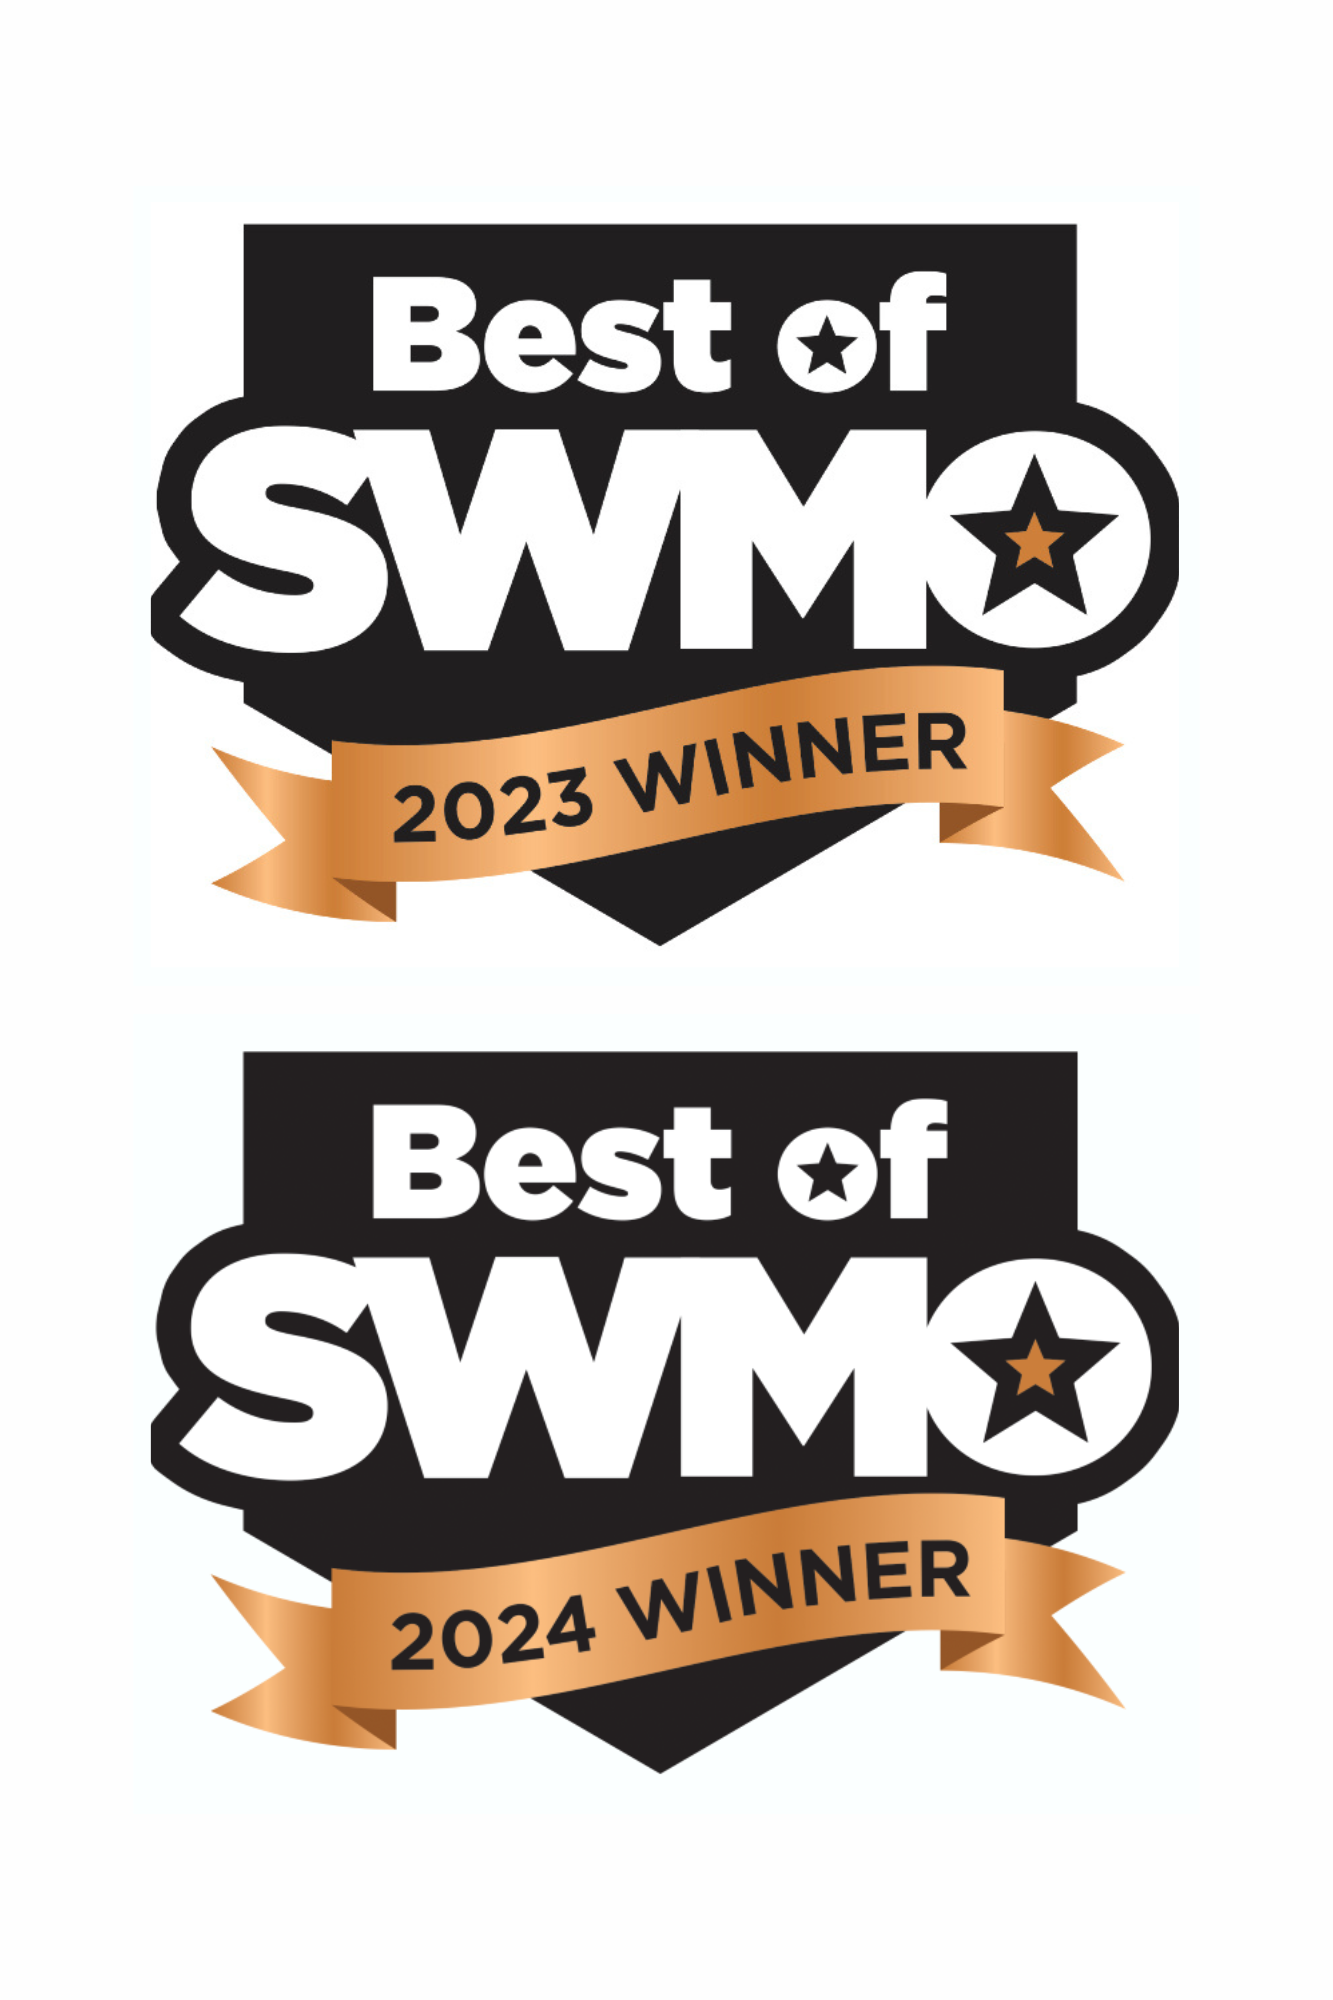 Best of SWMO winner badge